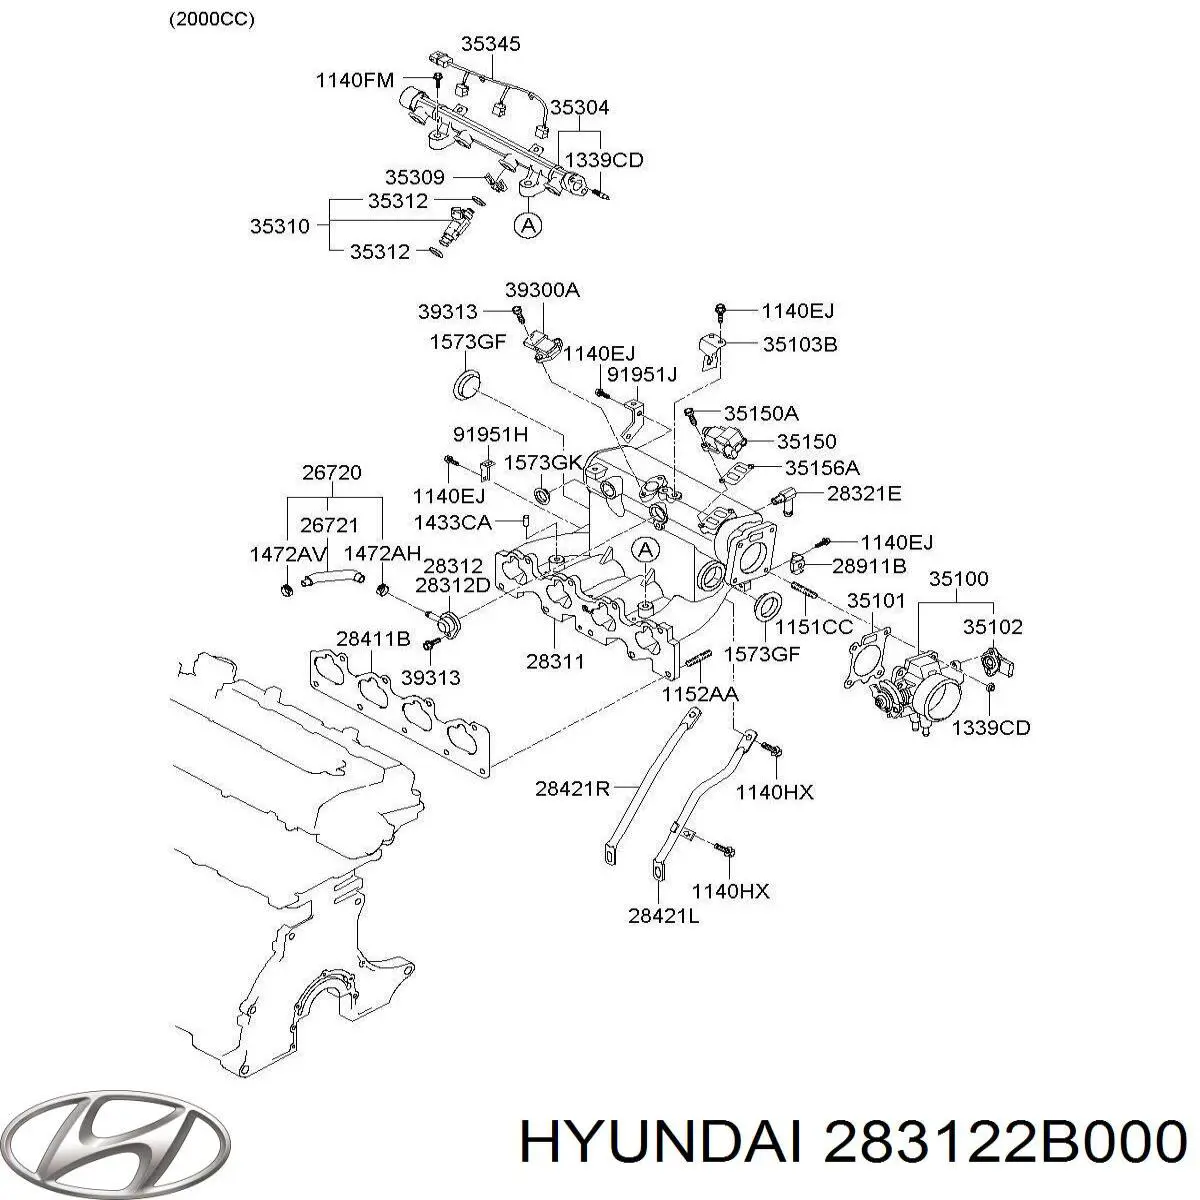 283122B000 Hyundai/Kia junta cuerpo mariposa